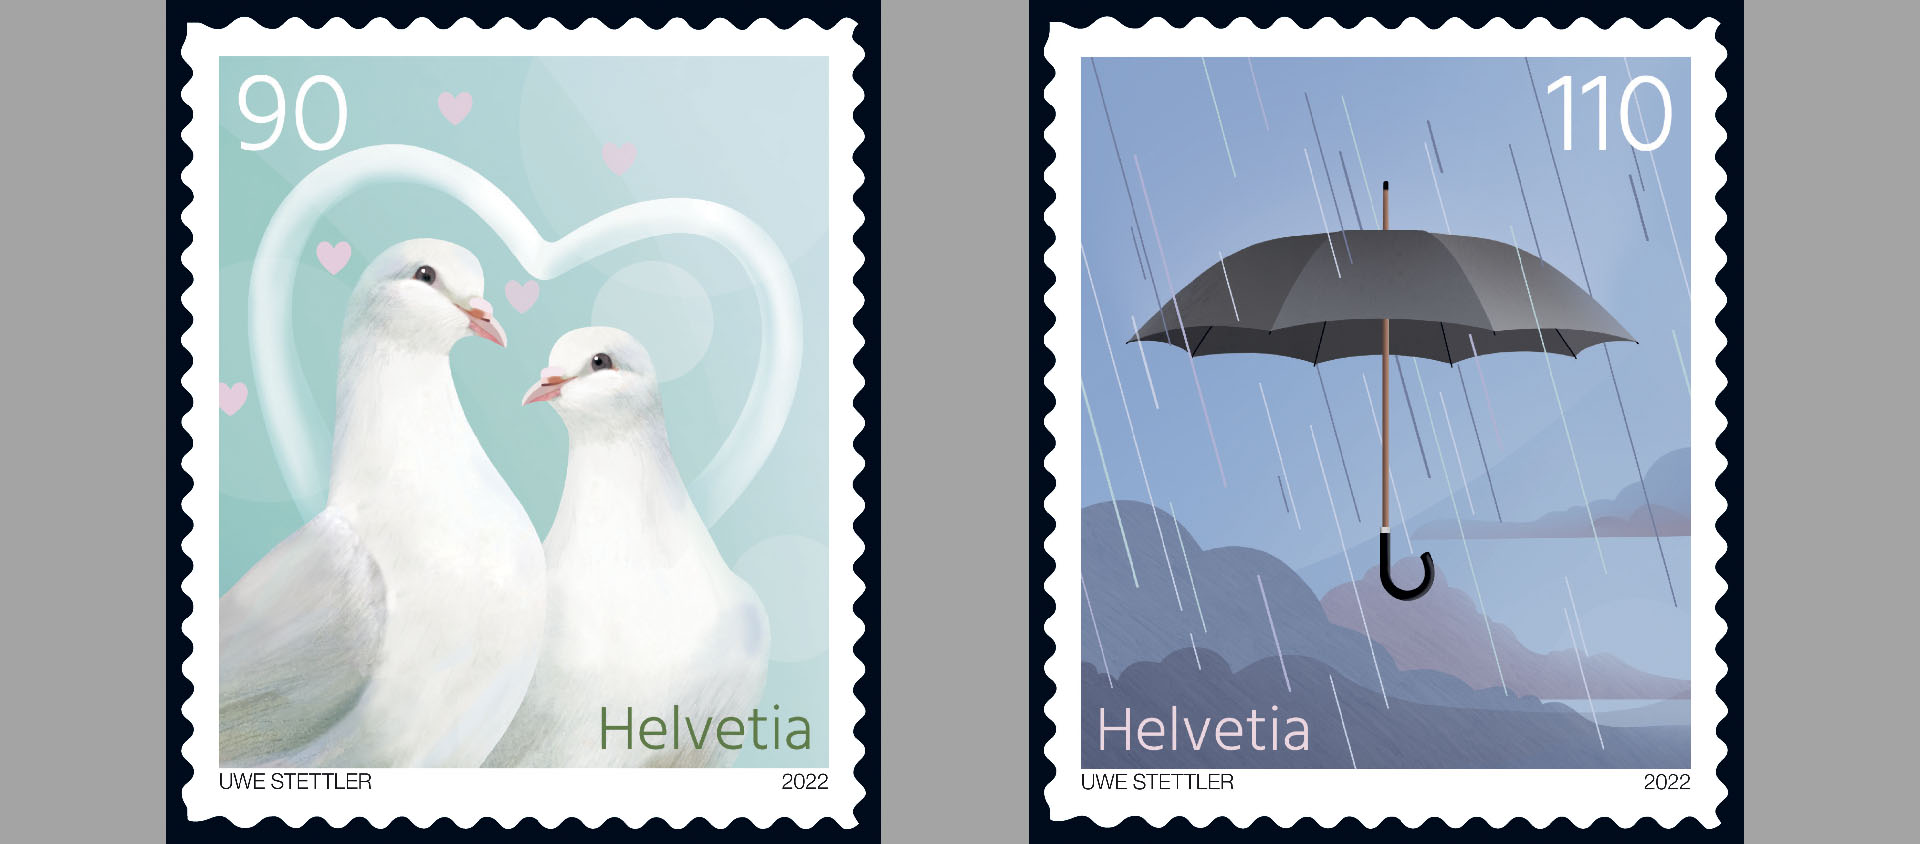 La Poste s'apprête à sortir deux timbres liés aux rites de passages: le mariage et le deuil | © La Poste suisse